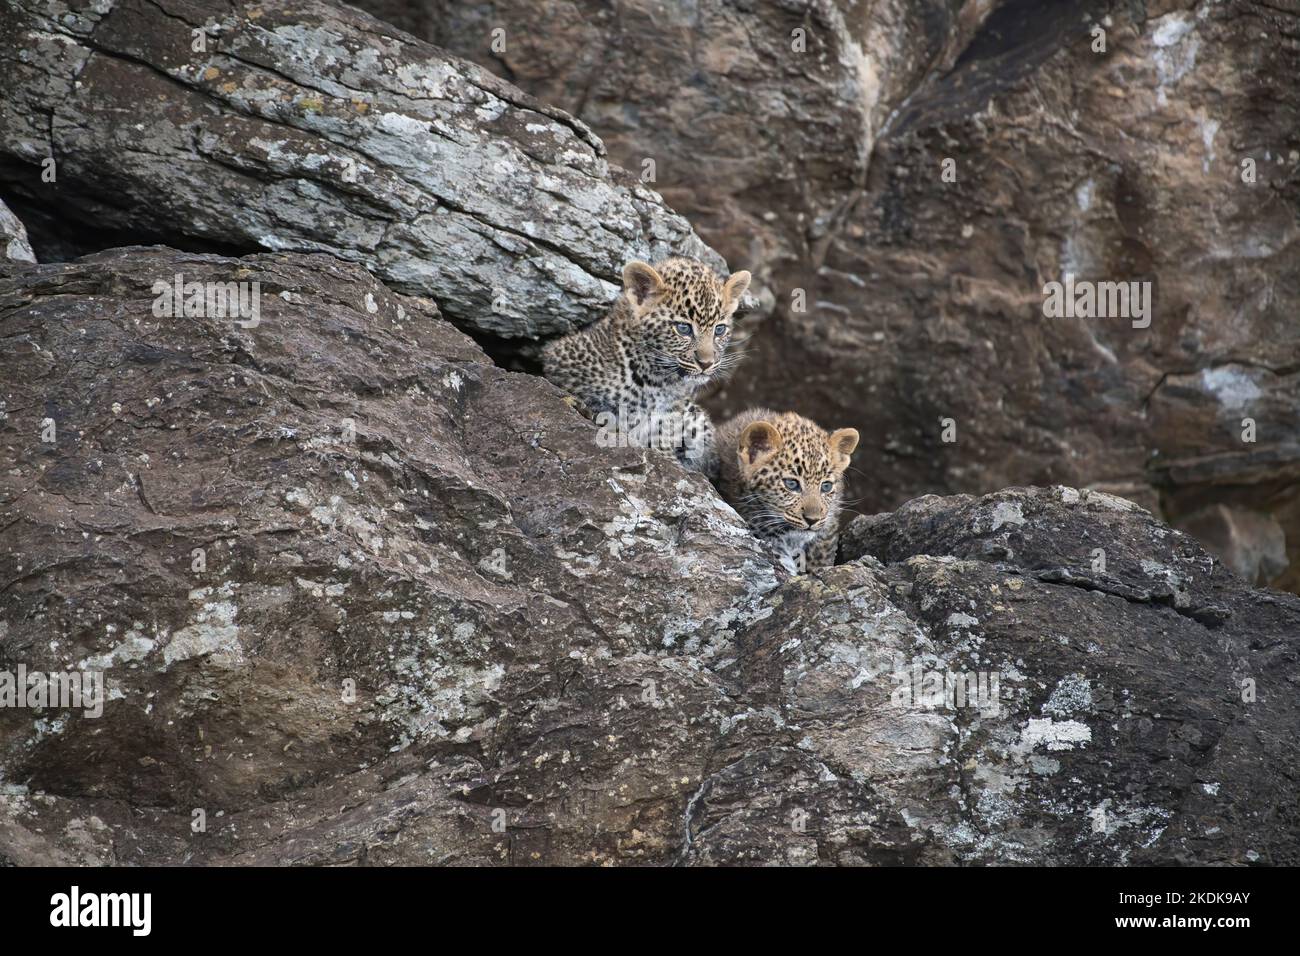 Léopard (Panthera pardus), petits oursons, âgés d'environ 10 semaines, explorant leur coin rocailleux Banque D'Images